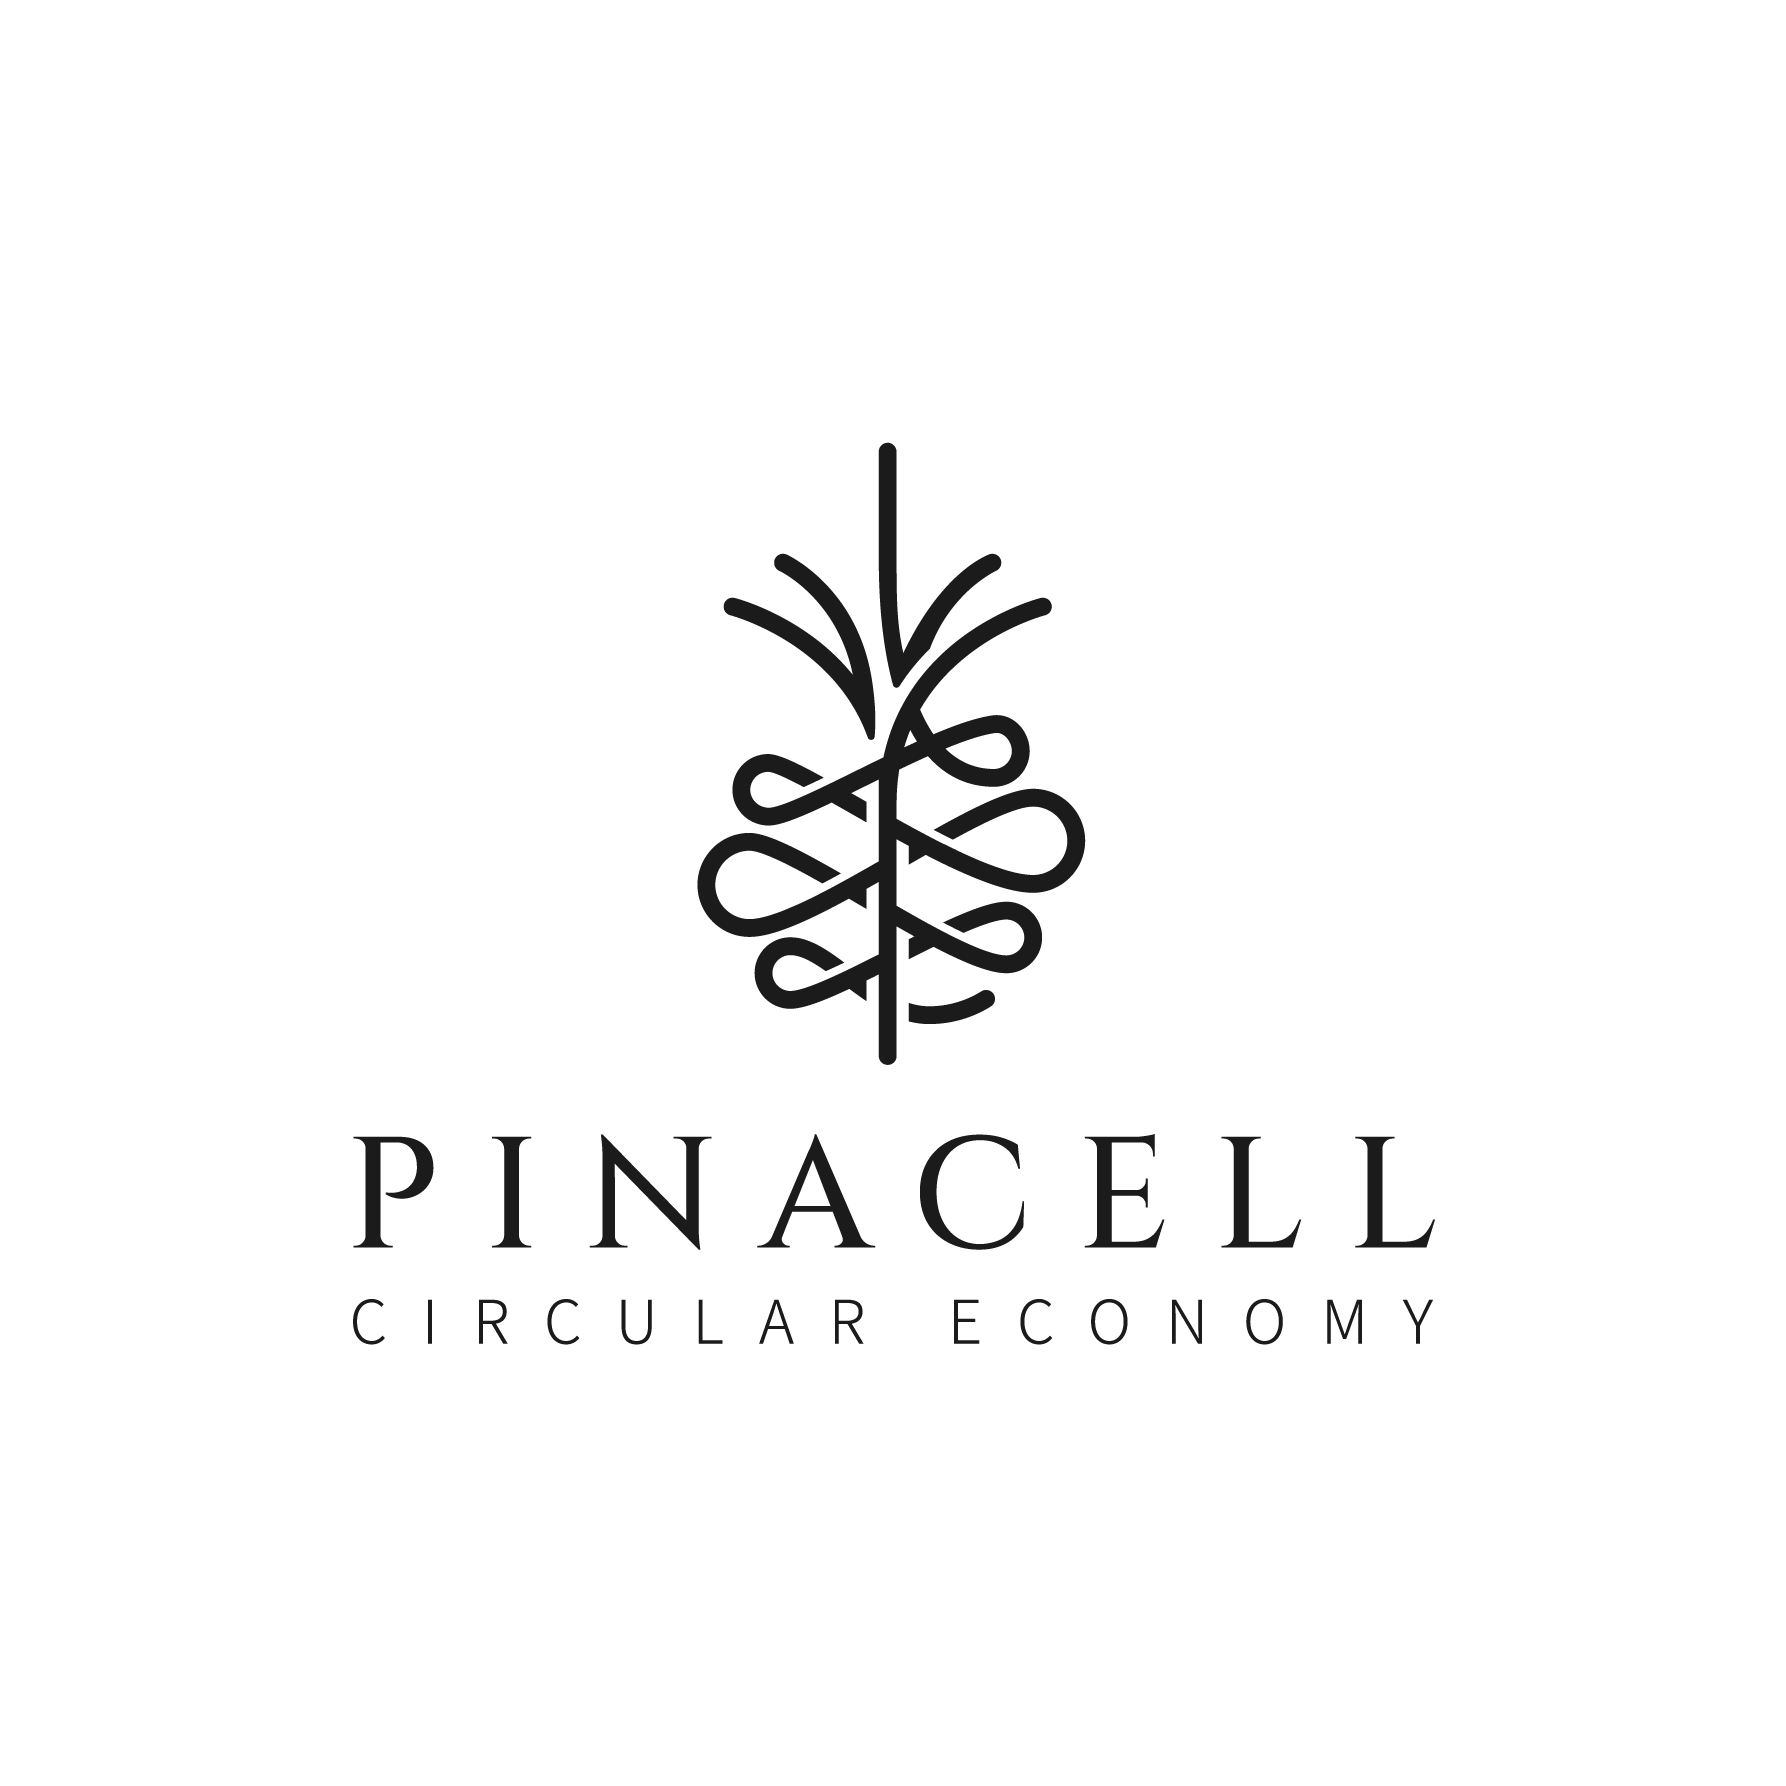 pinacell logo